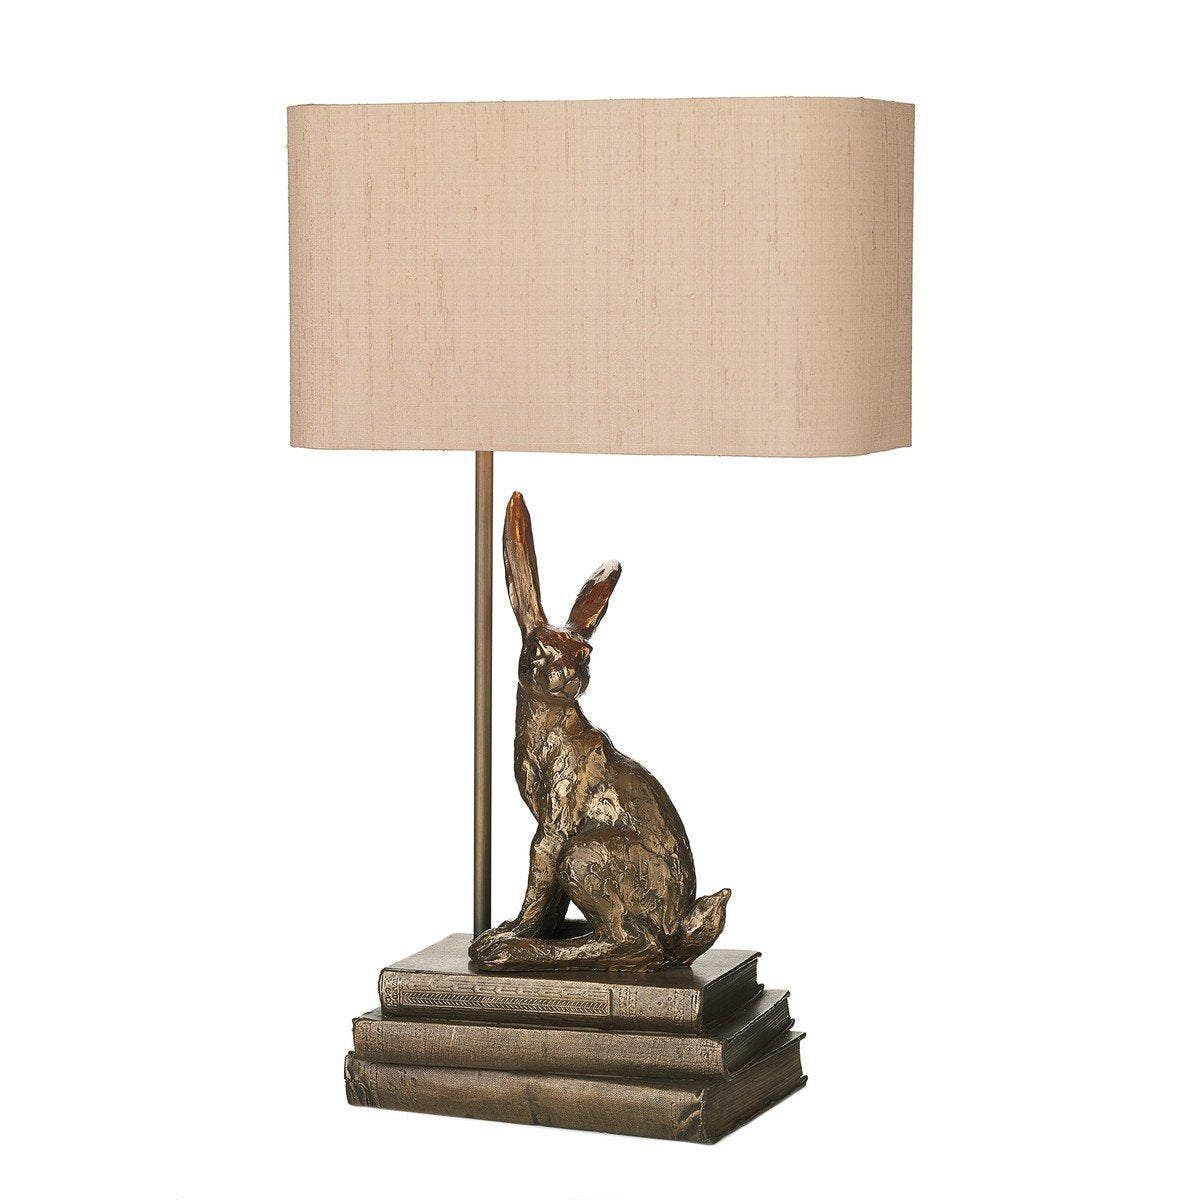 Hopper Bronze Table Lamp - London Lighting - 1